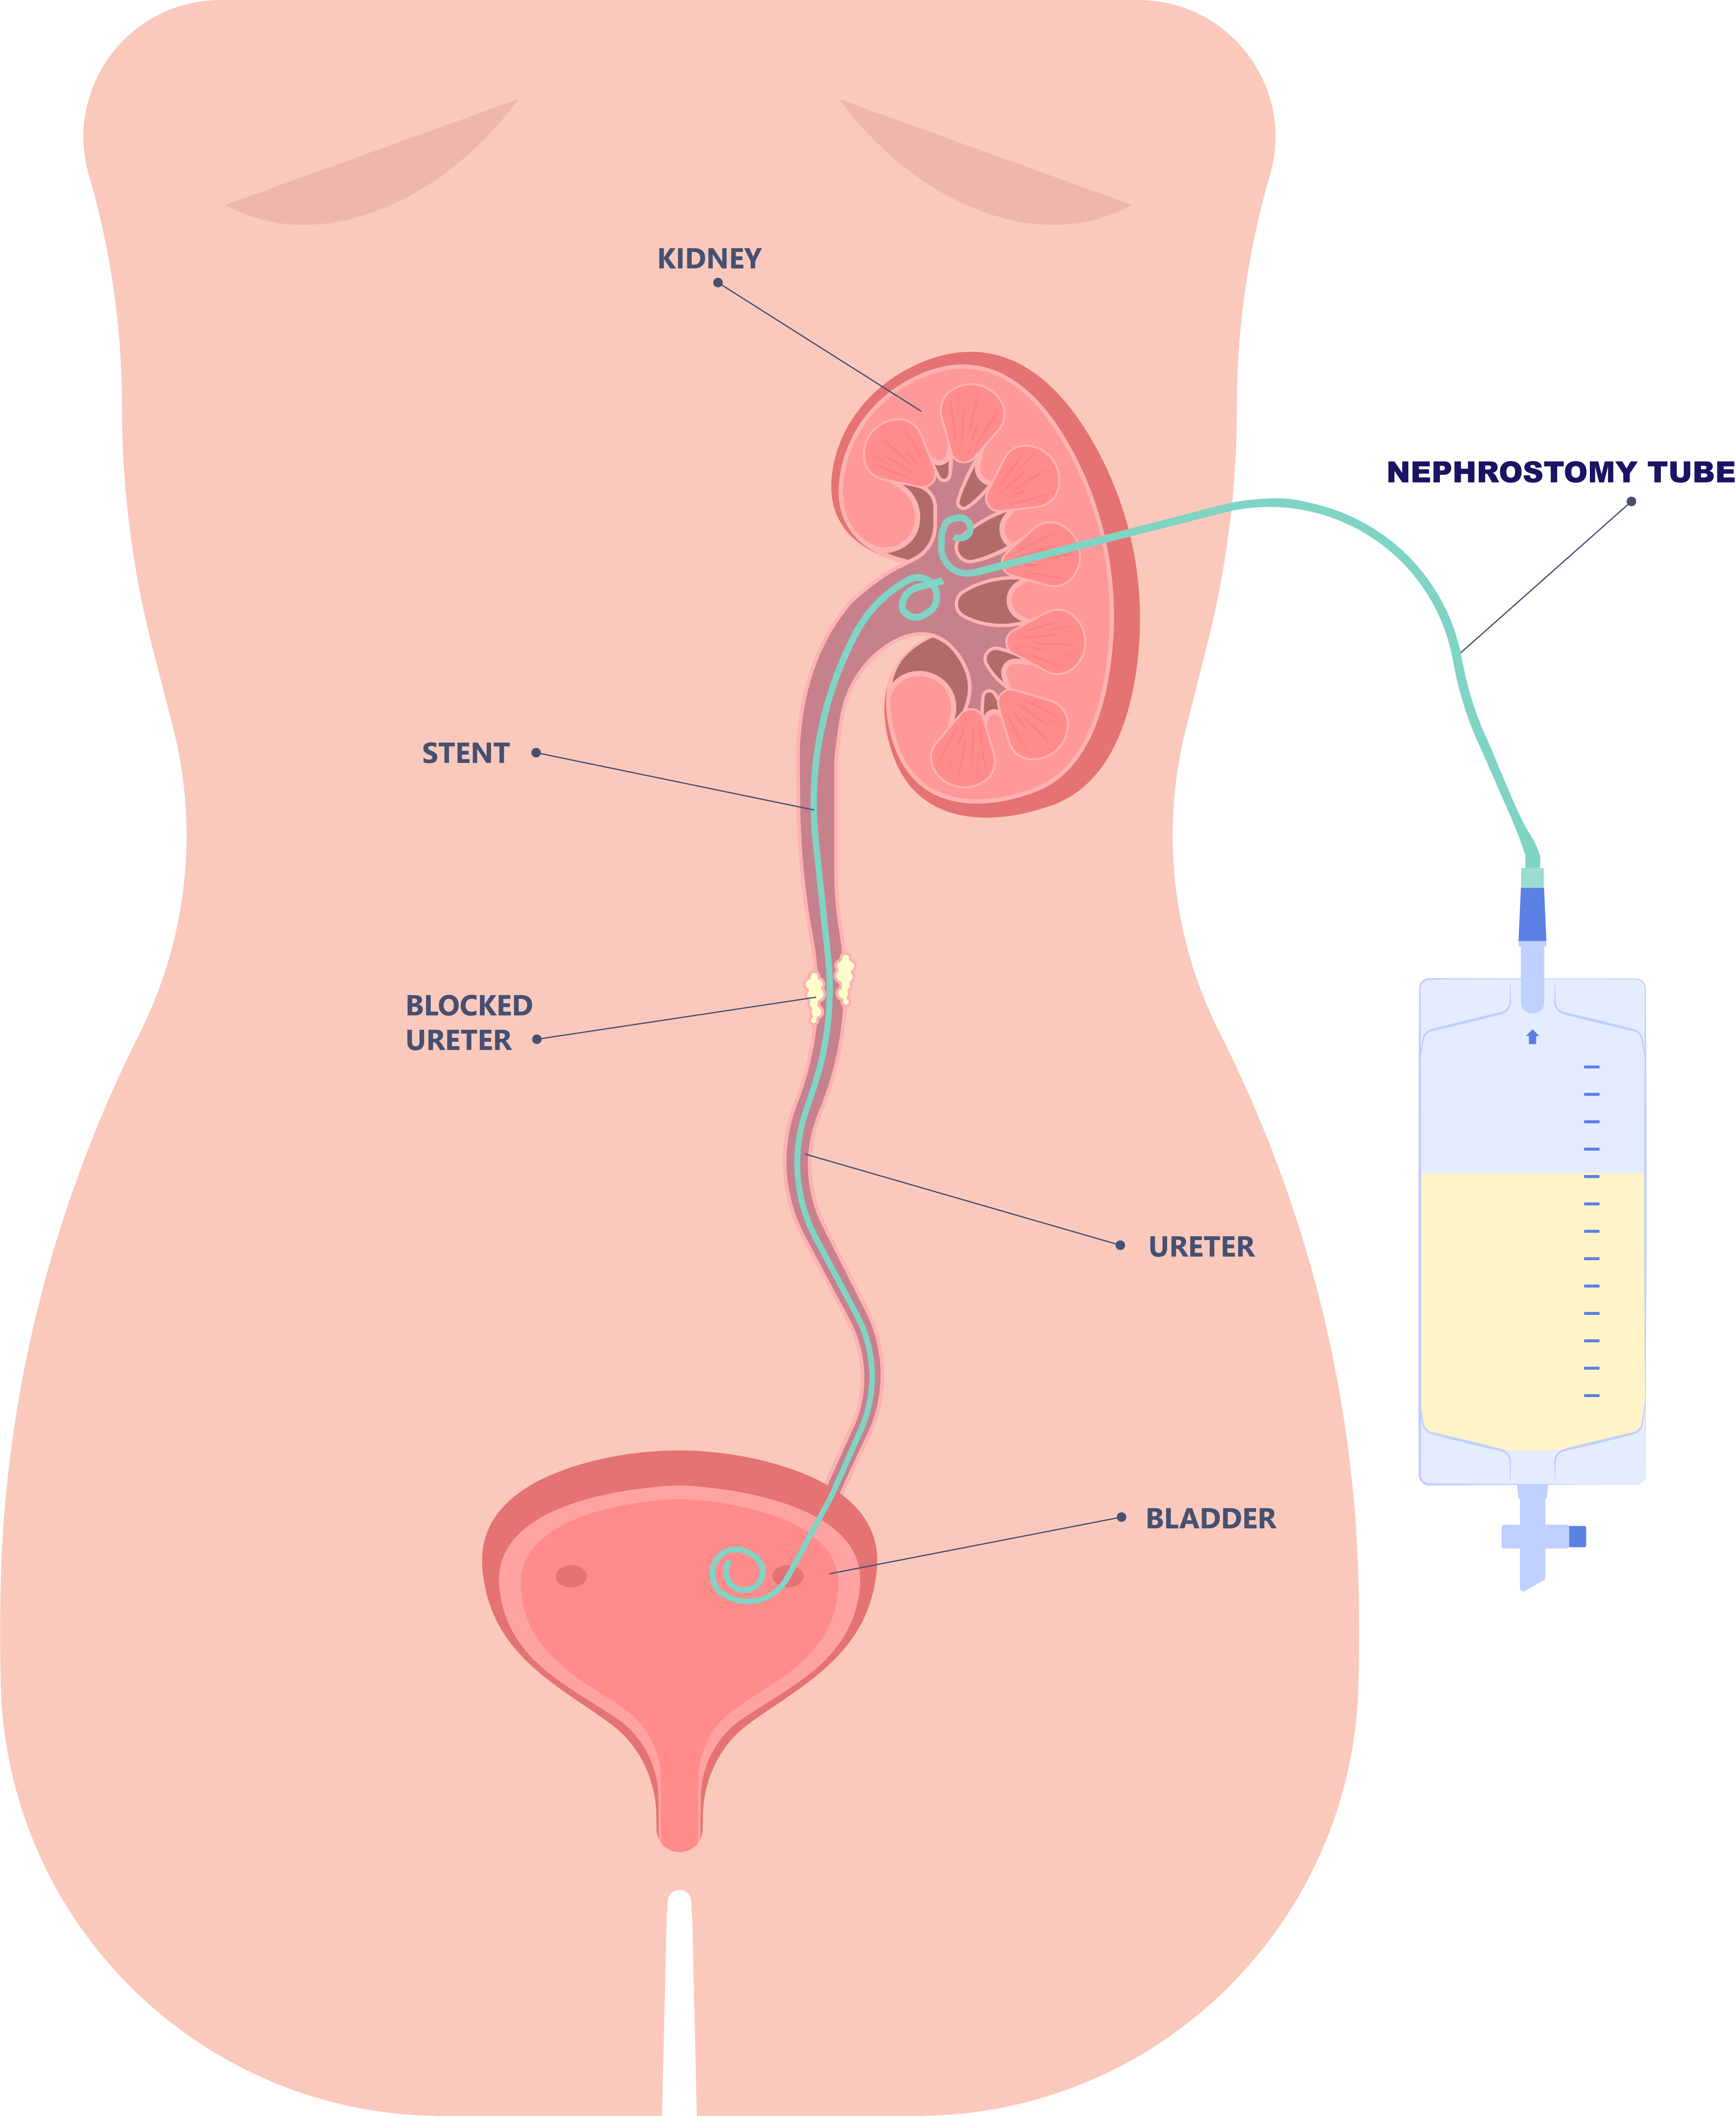 Ureteric stent insertion diagram